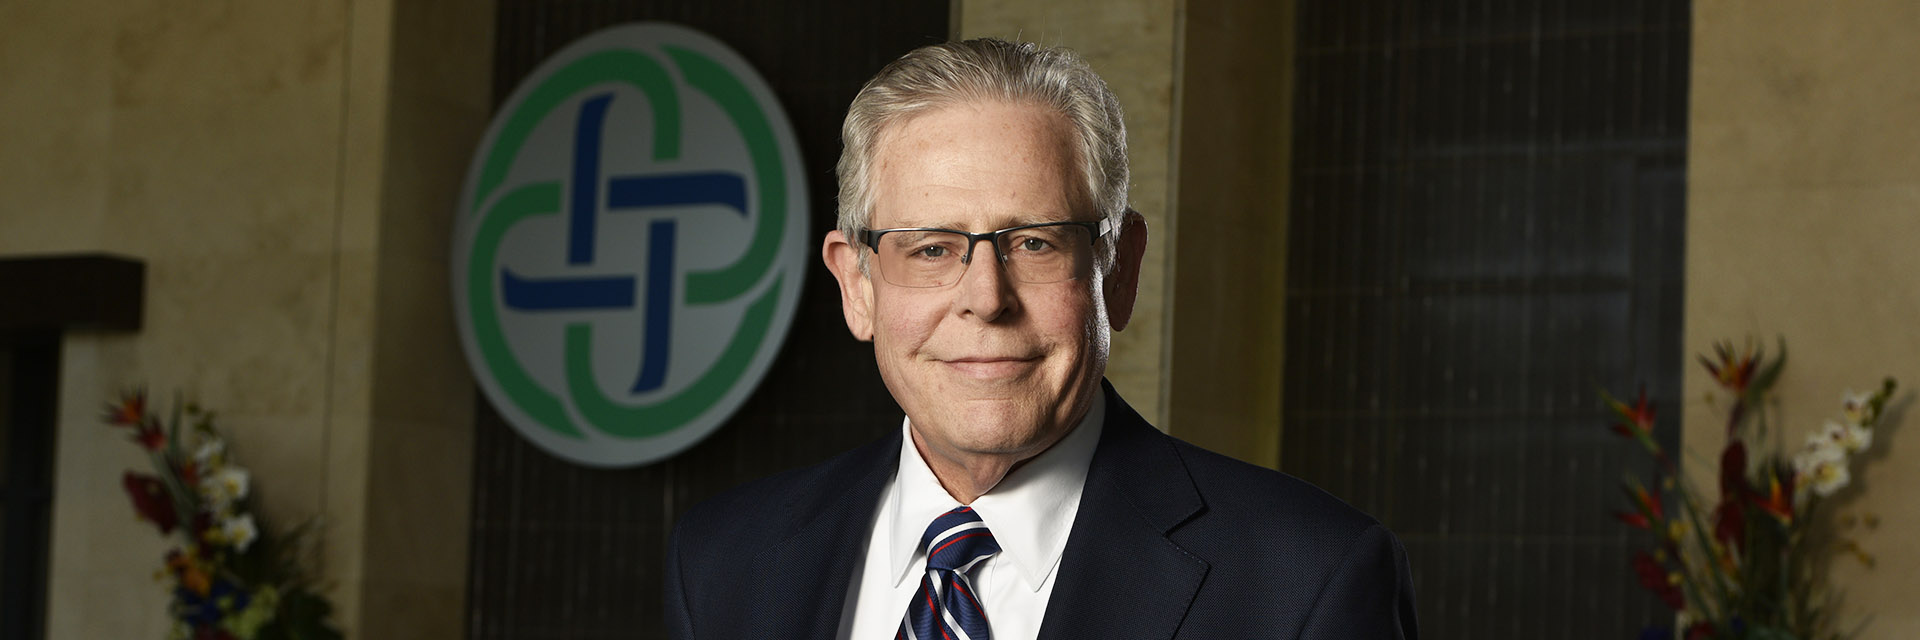 Barclay Berdan, FACHE, CEO, Texas Health Resources